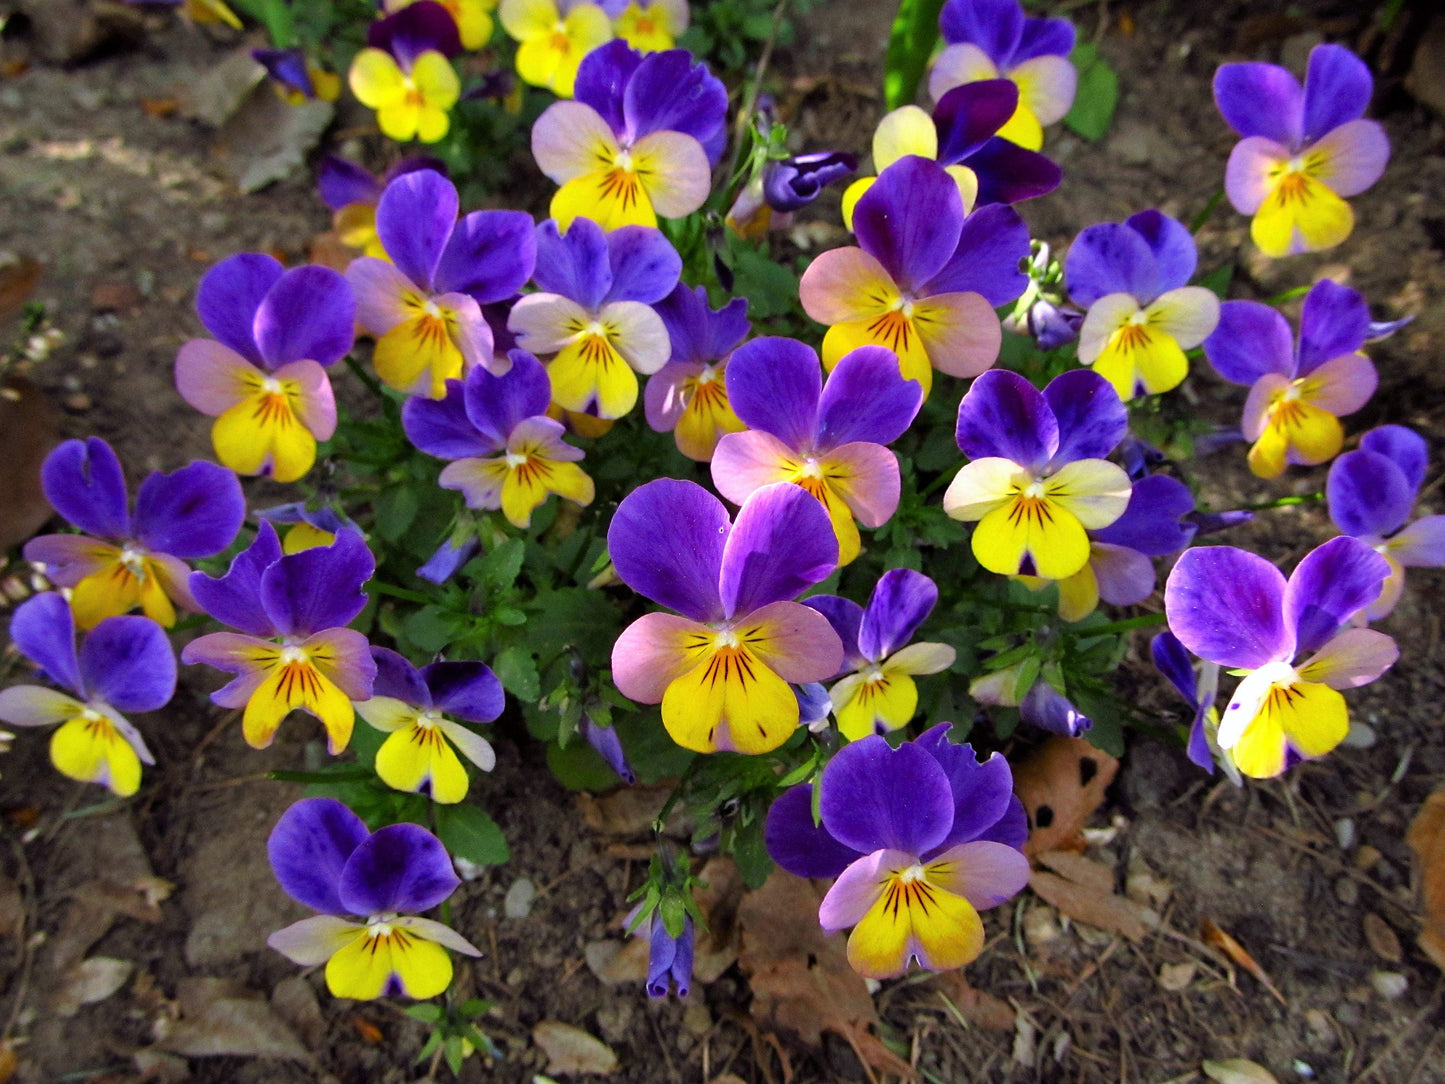 50 Dark JOHNNY JUMP UP Violet Viola Tricolor Flower Seeds